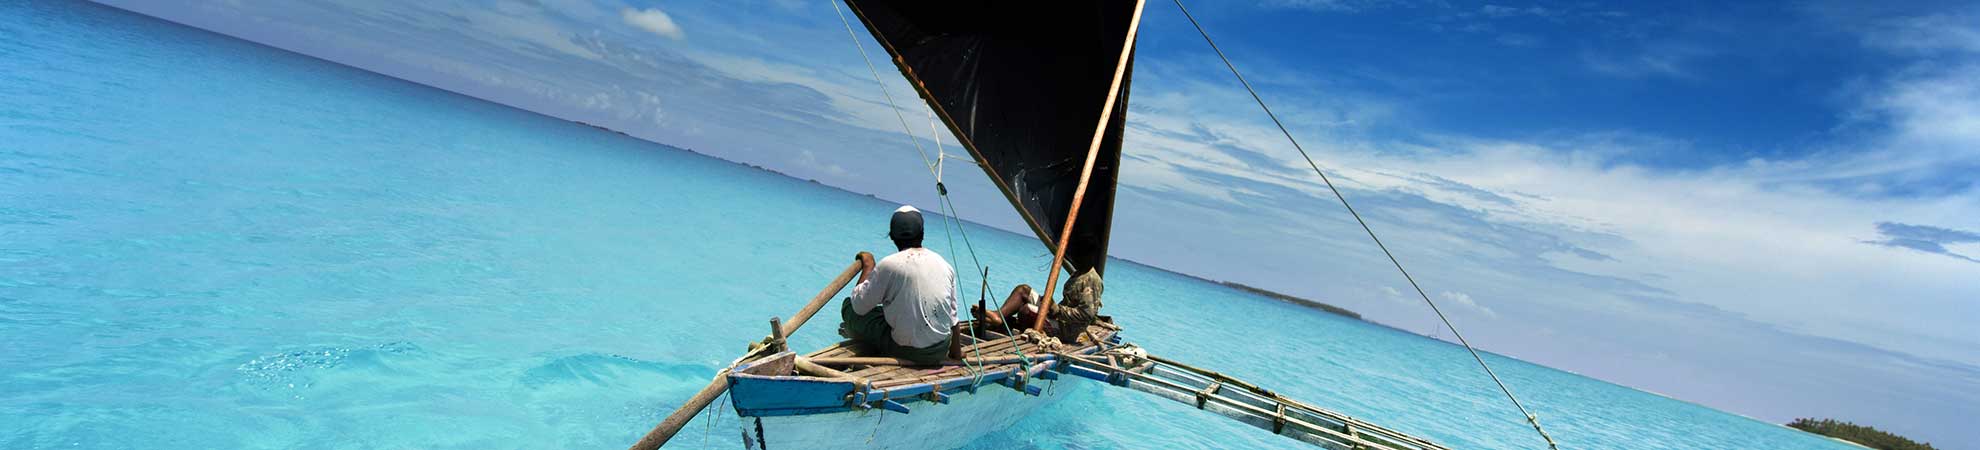 Vacances Polynésie